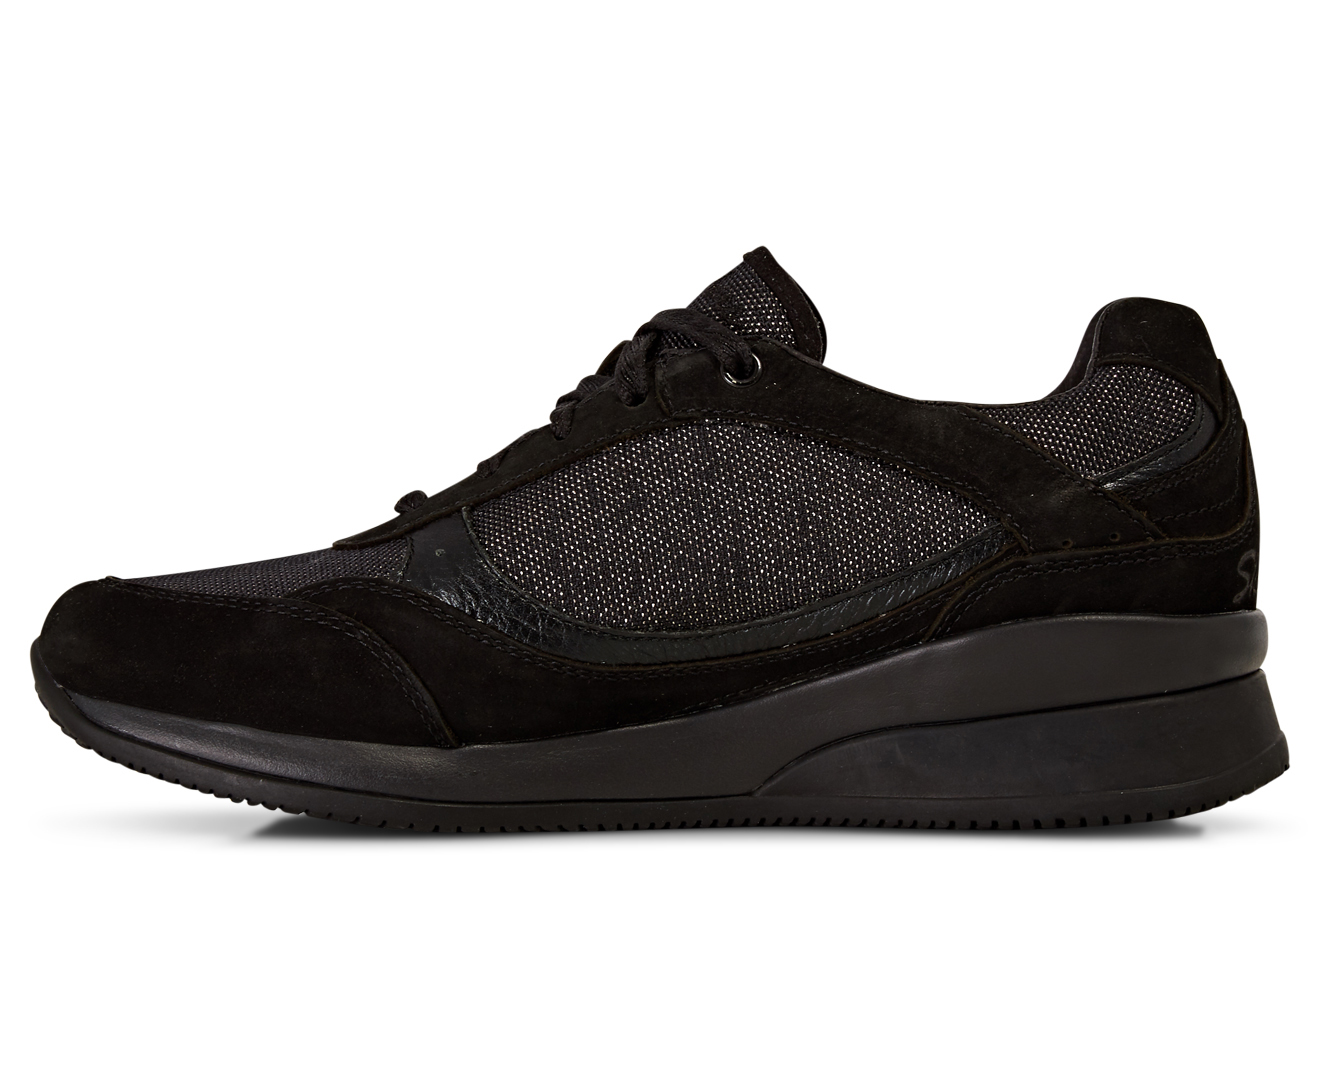 Skechers Women's Vita Wedge Fit Shoe - Black | Catch.co.nz